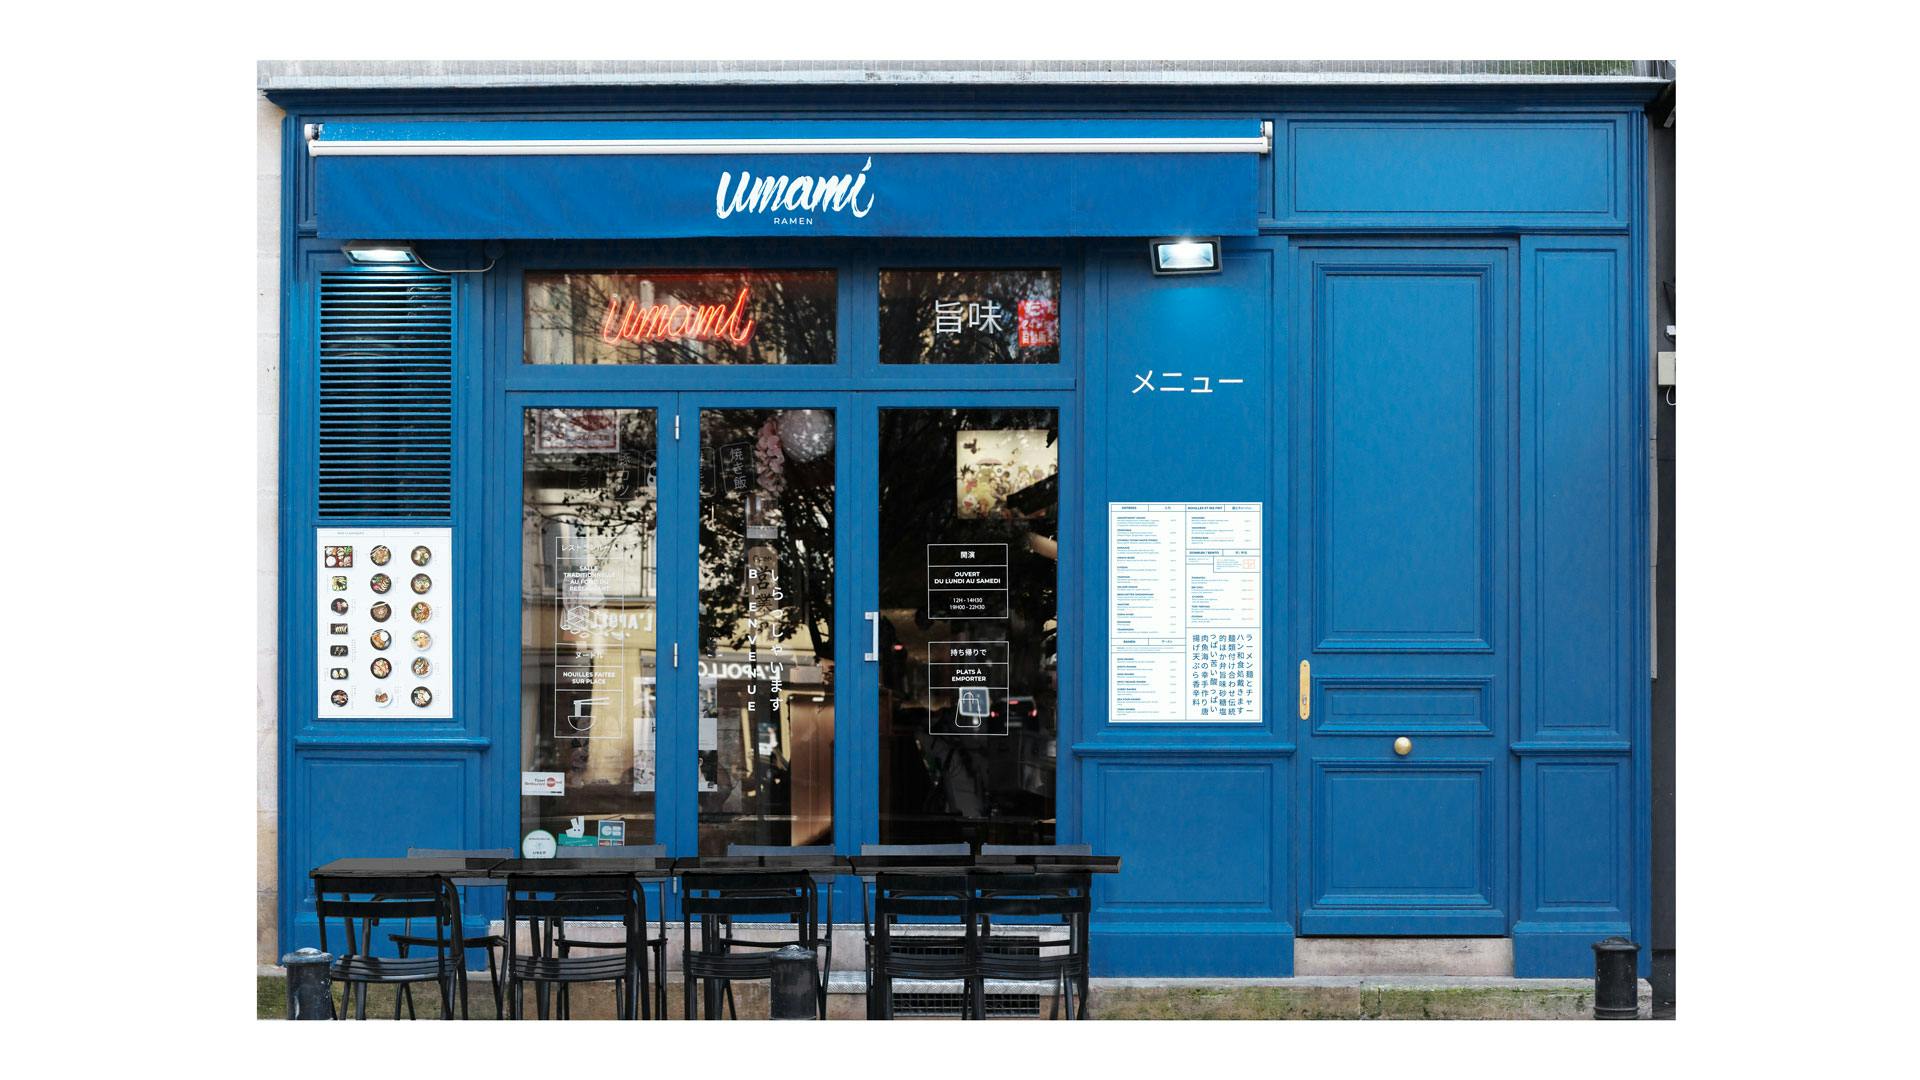 Nouvelle façade du restaurant Umami Ramen réalisée par le Studio Hekla - Bordeaux